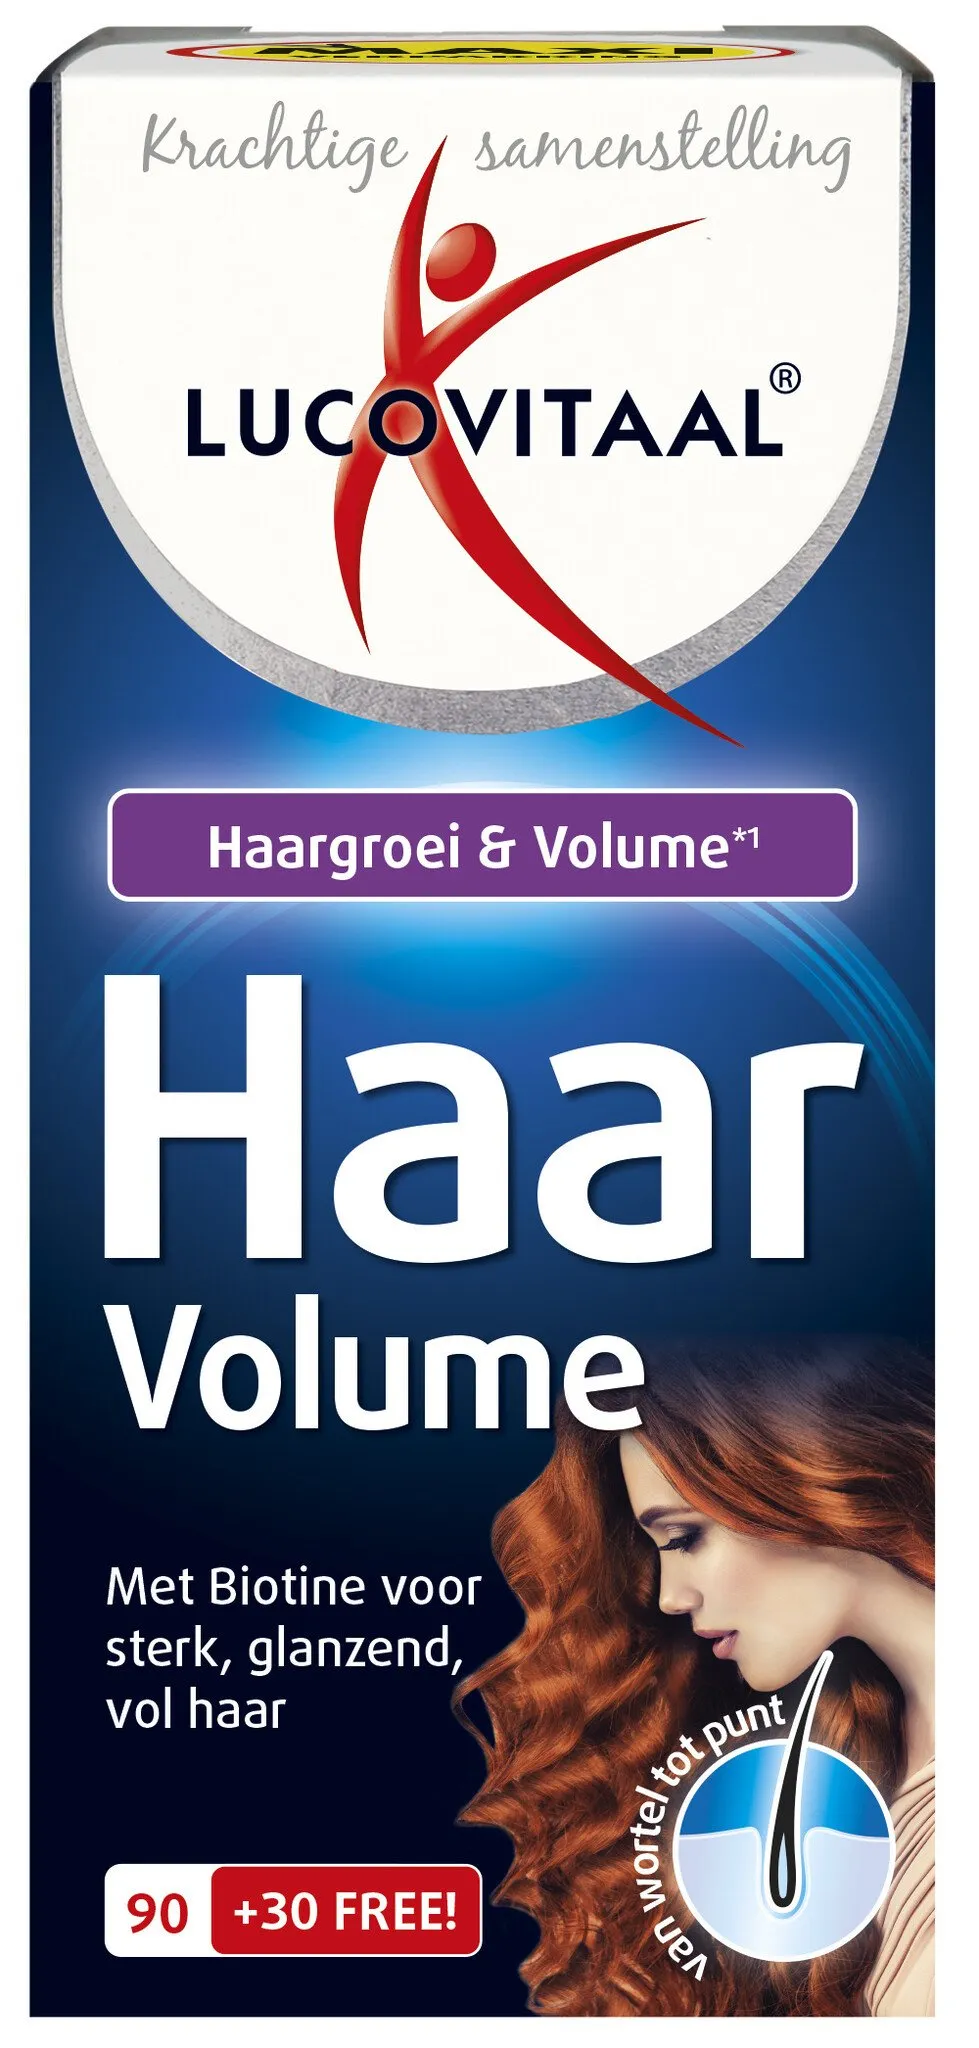 Lucovitaal Haargroei & Volume - 120 capsules